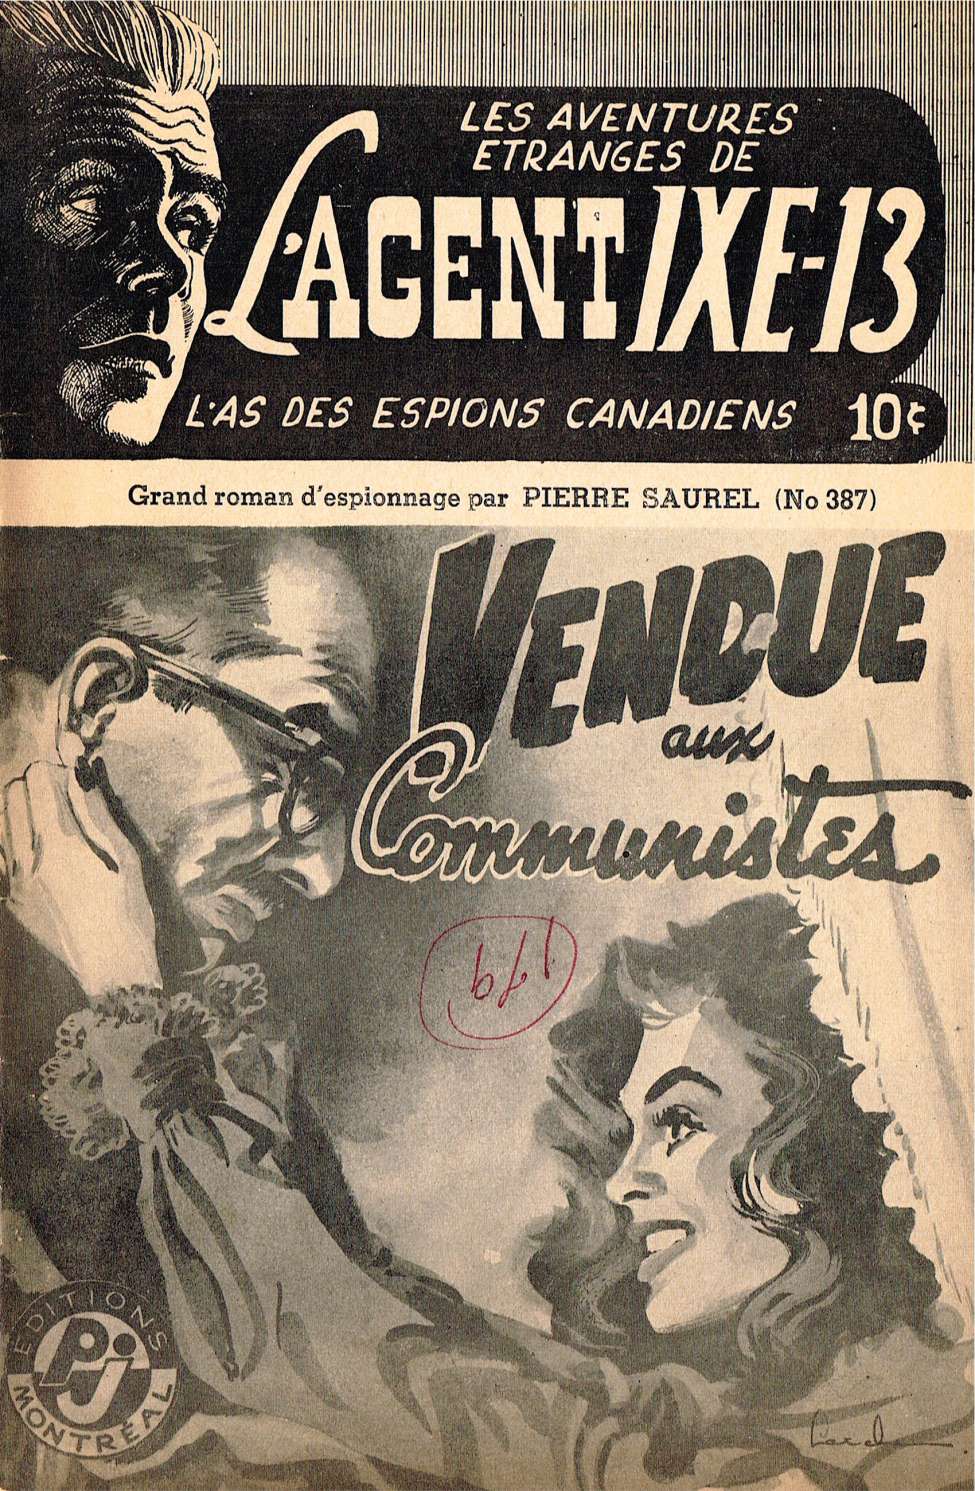 Book Cover For L'Agent IXE-13 v2 387 - Vendu aux communistes